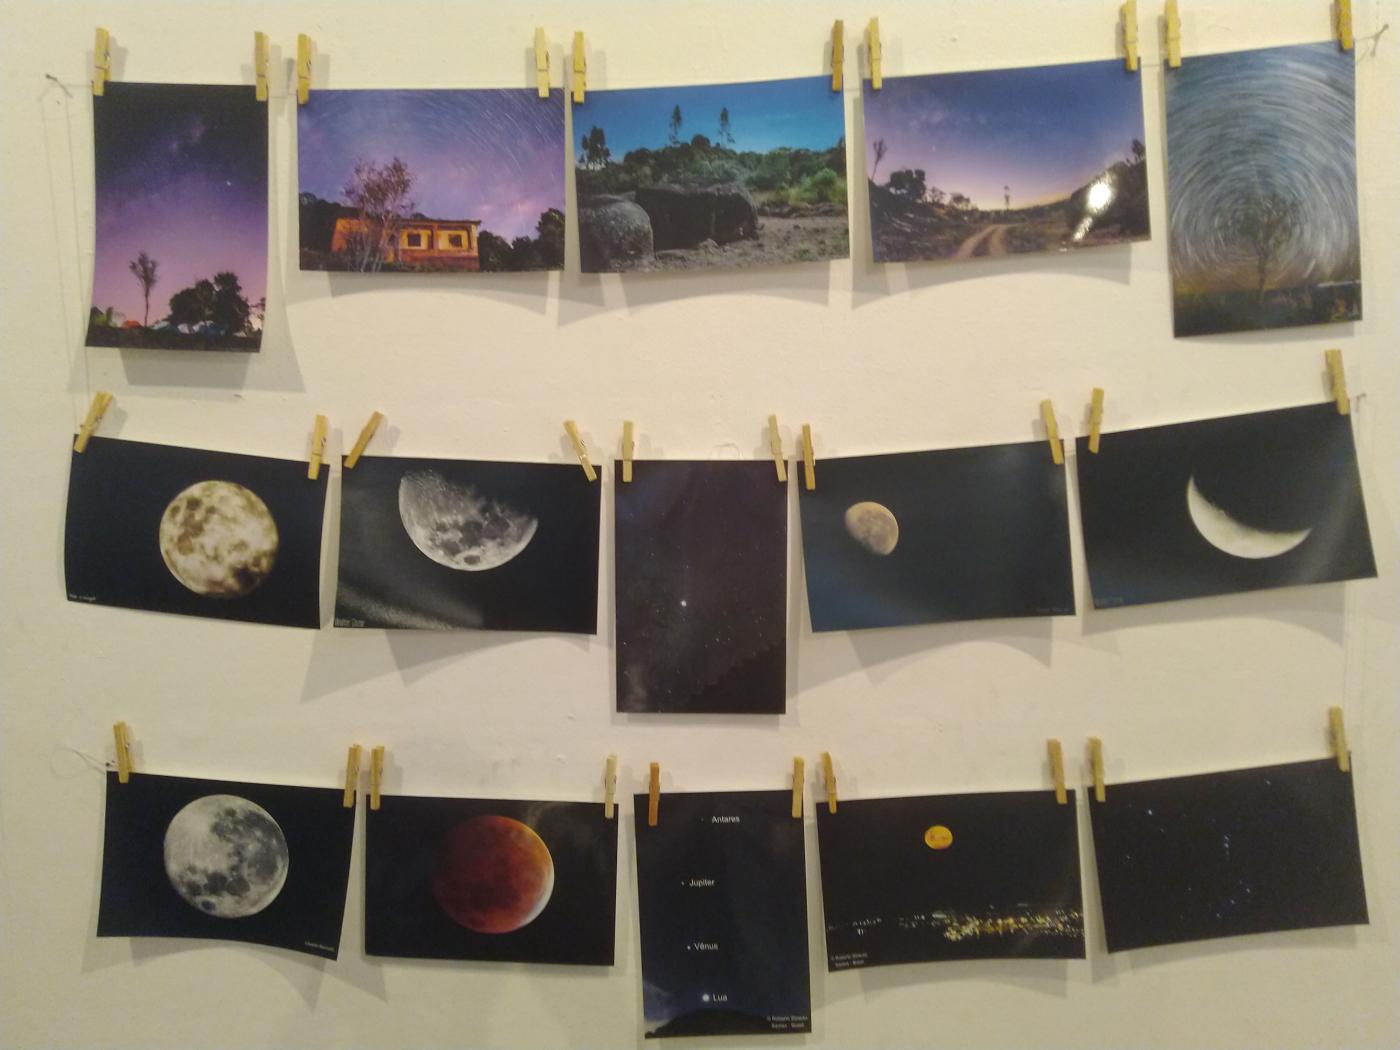 Imagens fixadas em parede mostram lugares e a lua em vários ângulos. #Pracegover